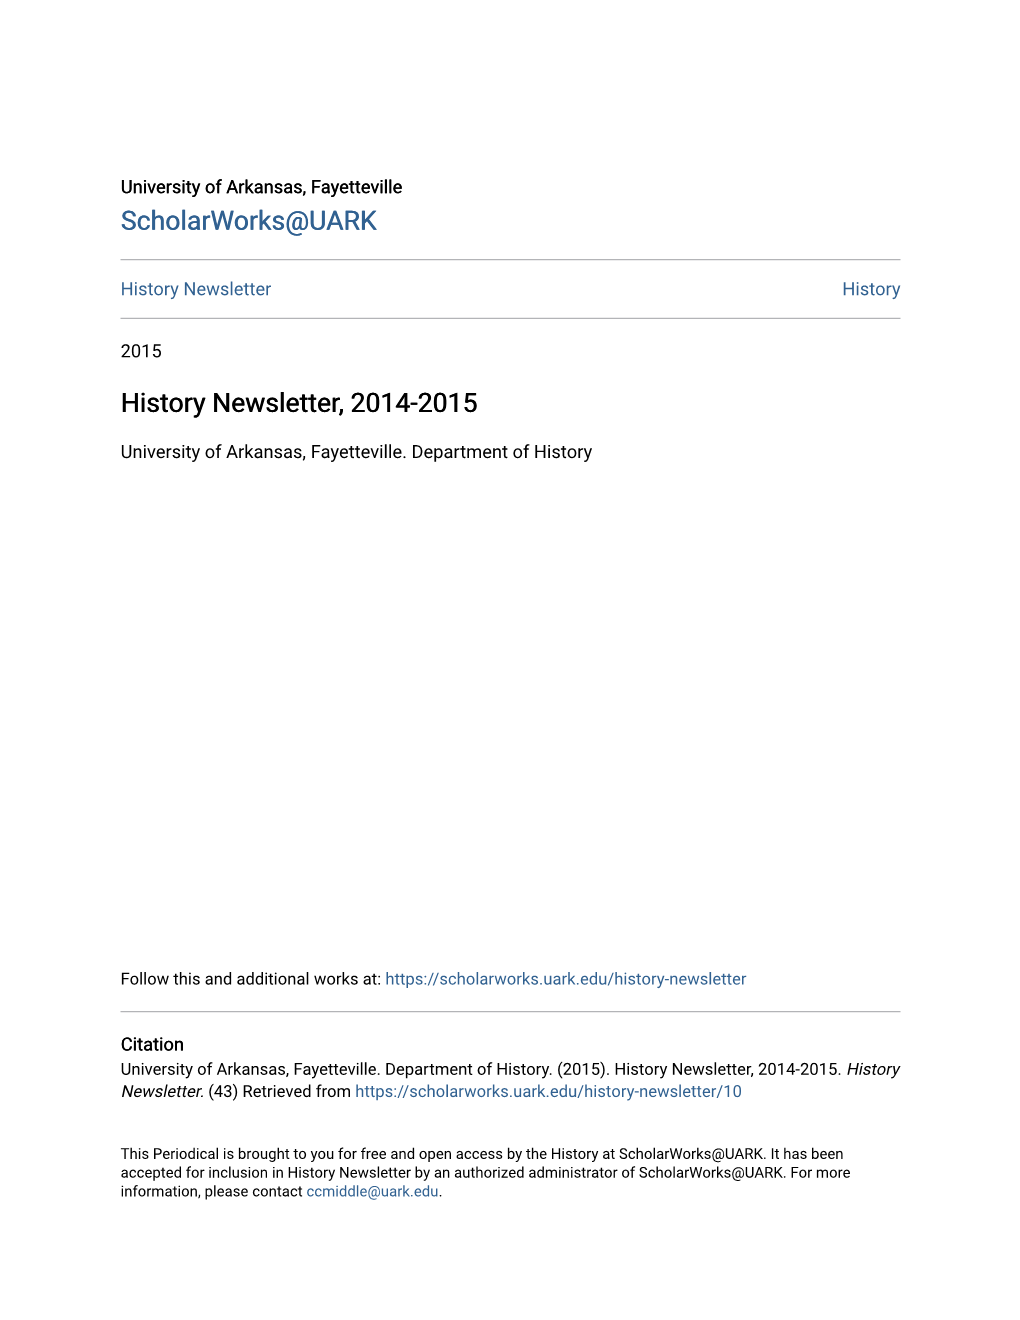 History Newsletter, 2014-2015